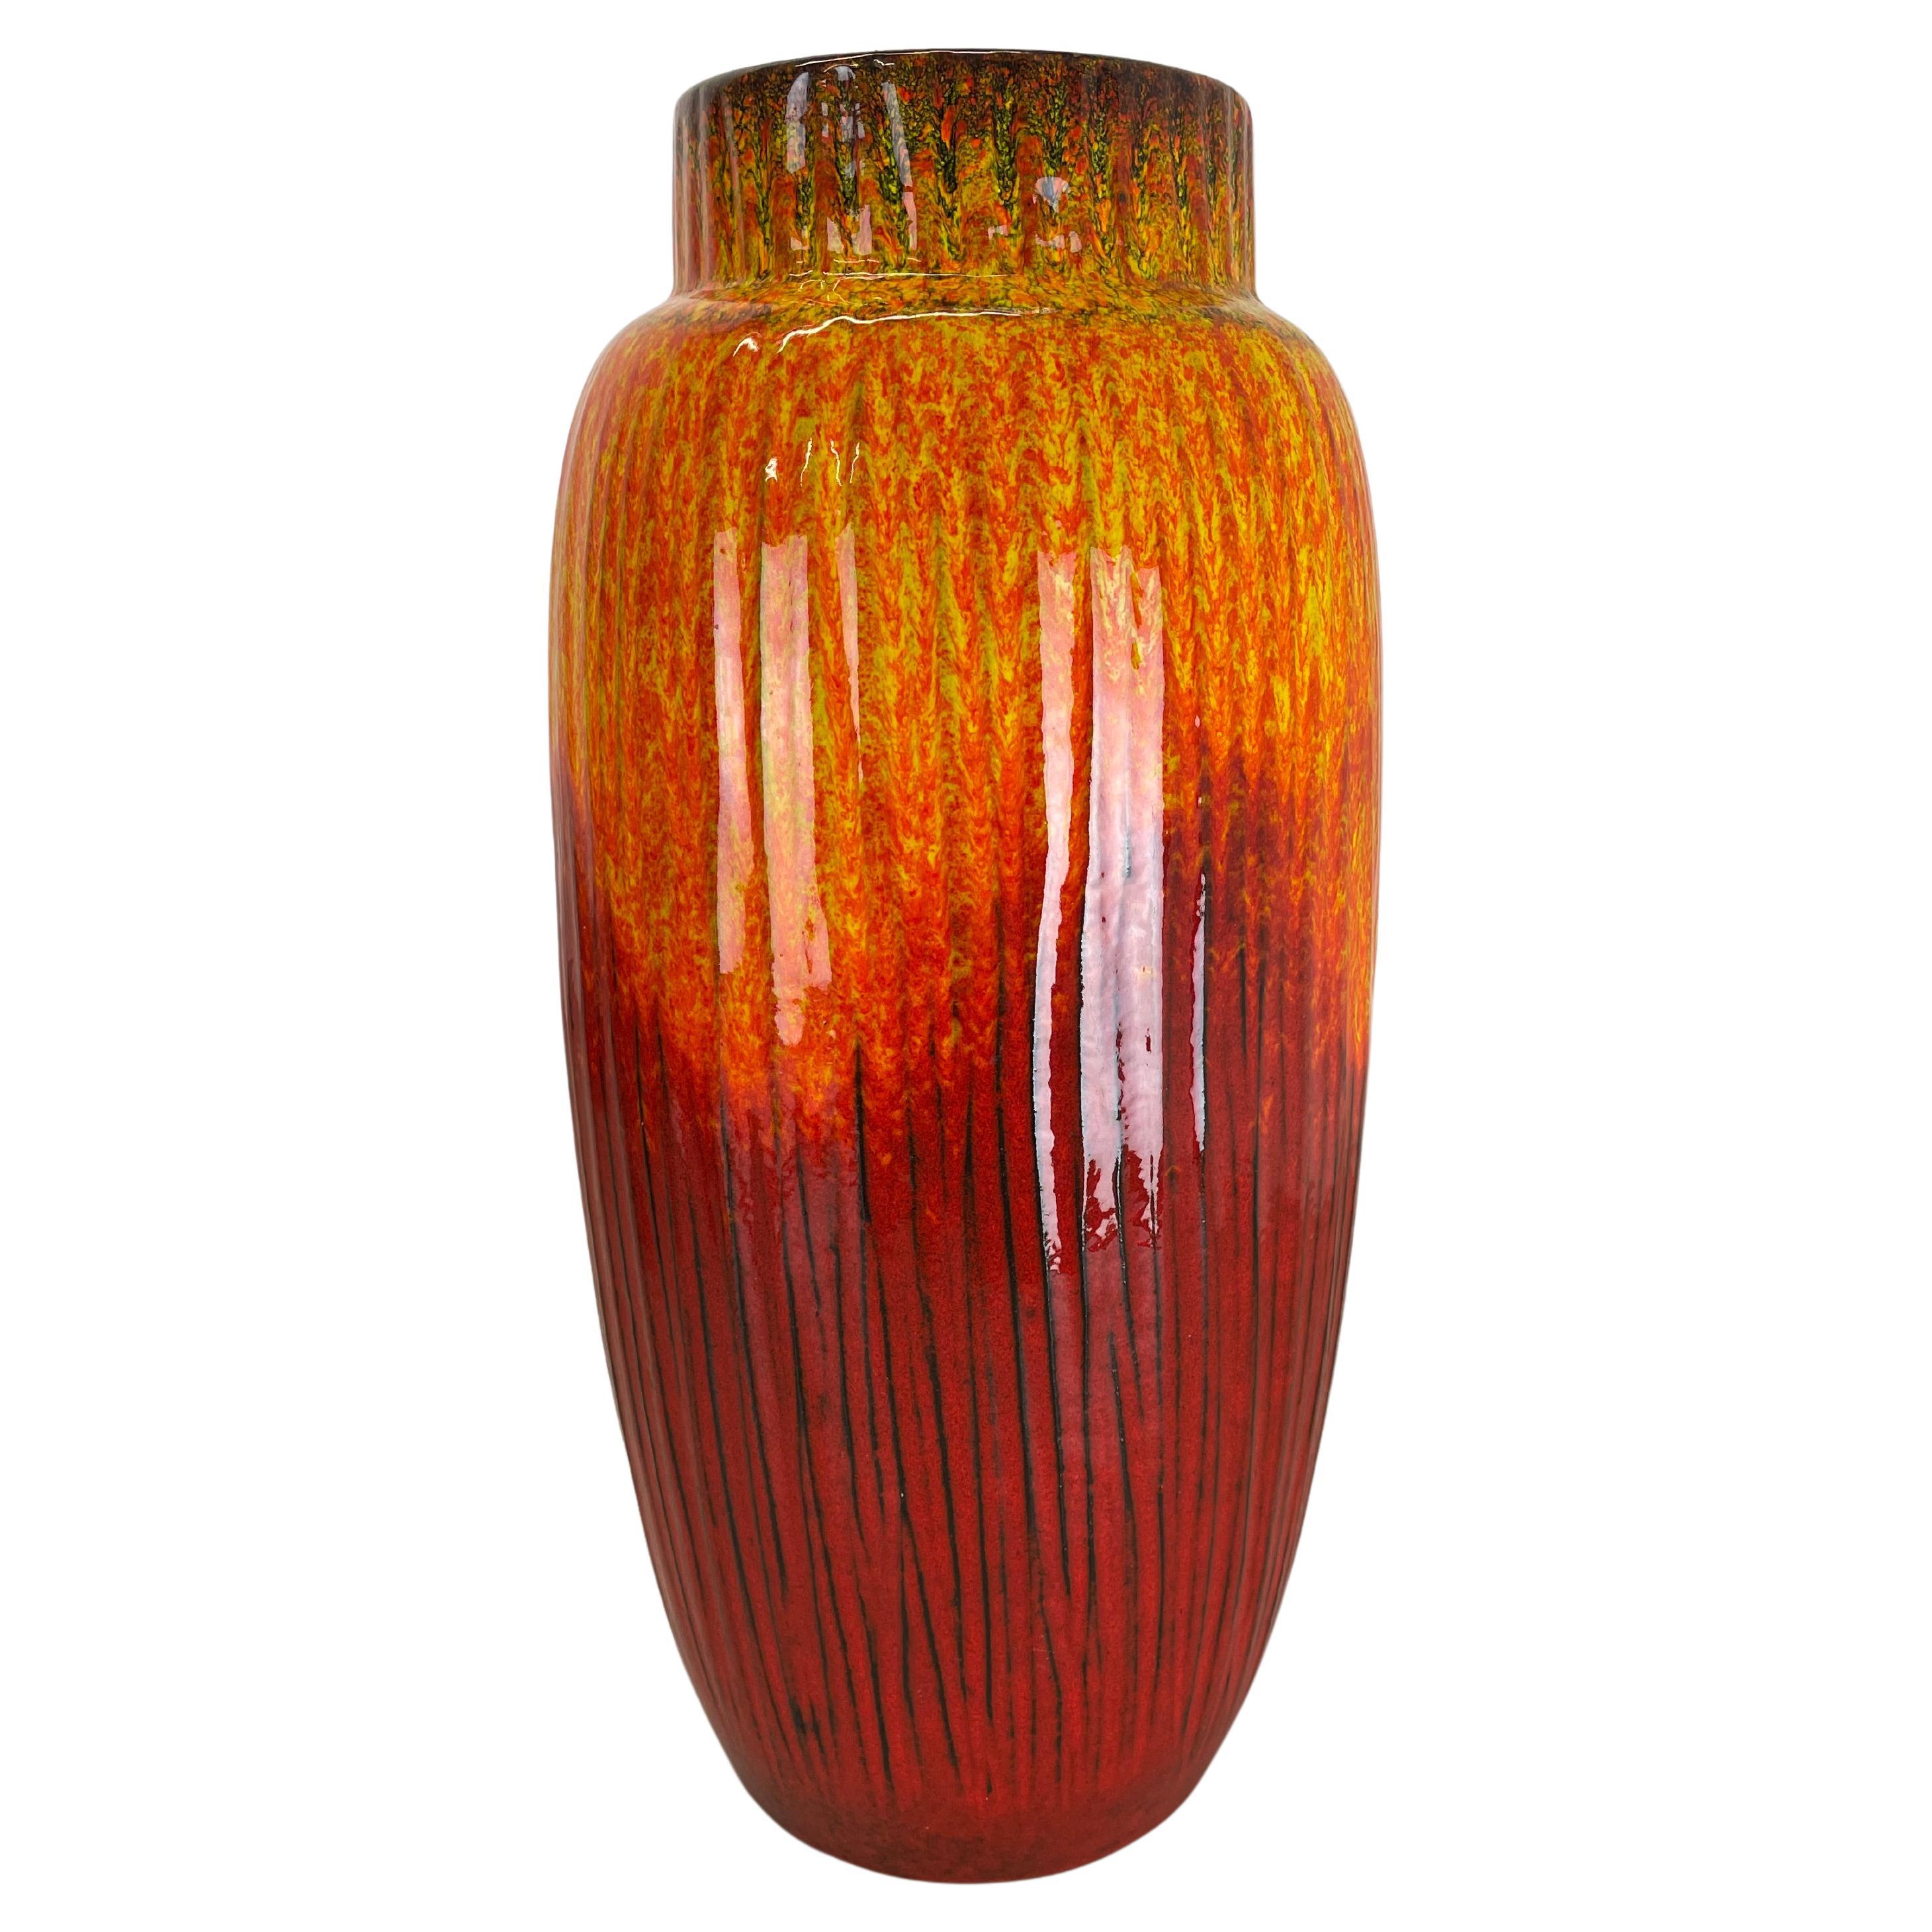 Grand vase de sol supercolore en poterie de lave grasse de 38 cm fabriqué par Scheurich, 1970